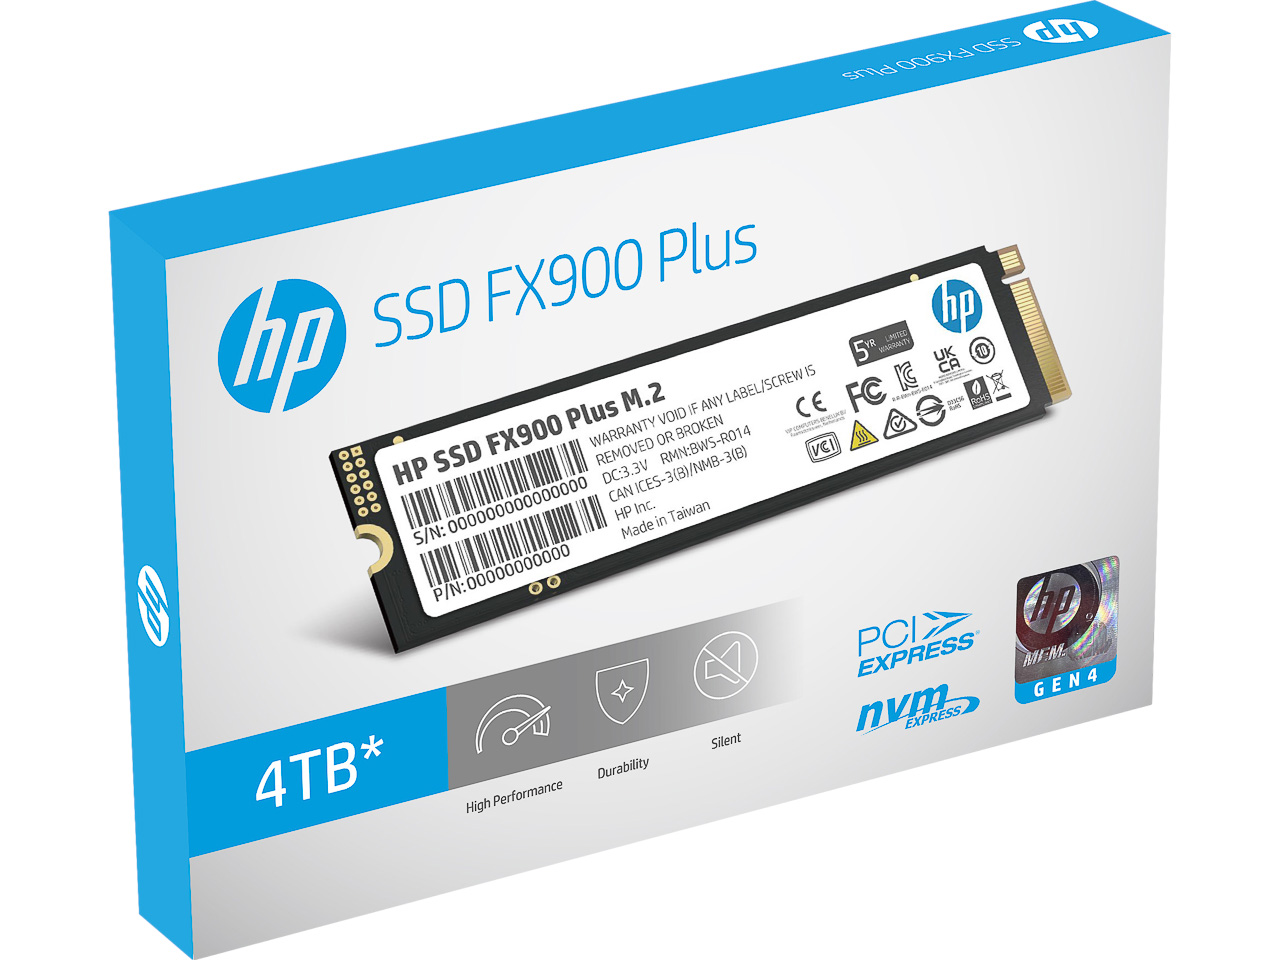 HP SSD FX900 PLUS 4TB M.2 NVME 7F619AA#ABB internal 1